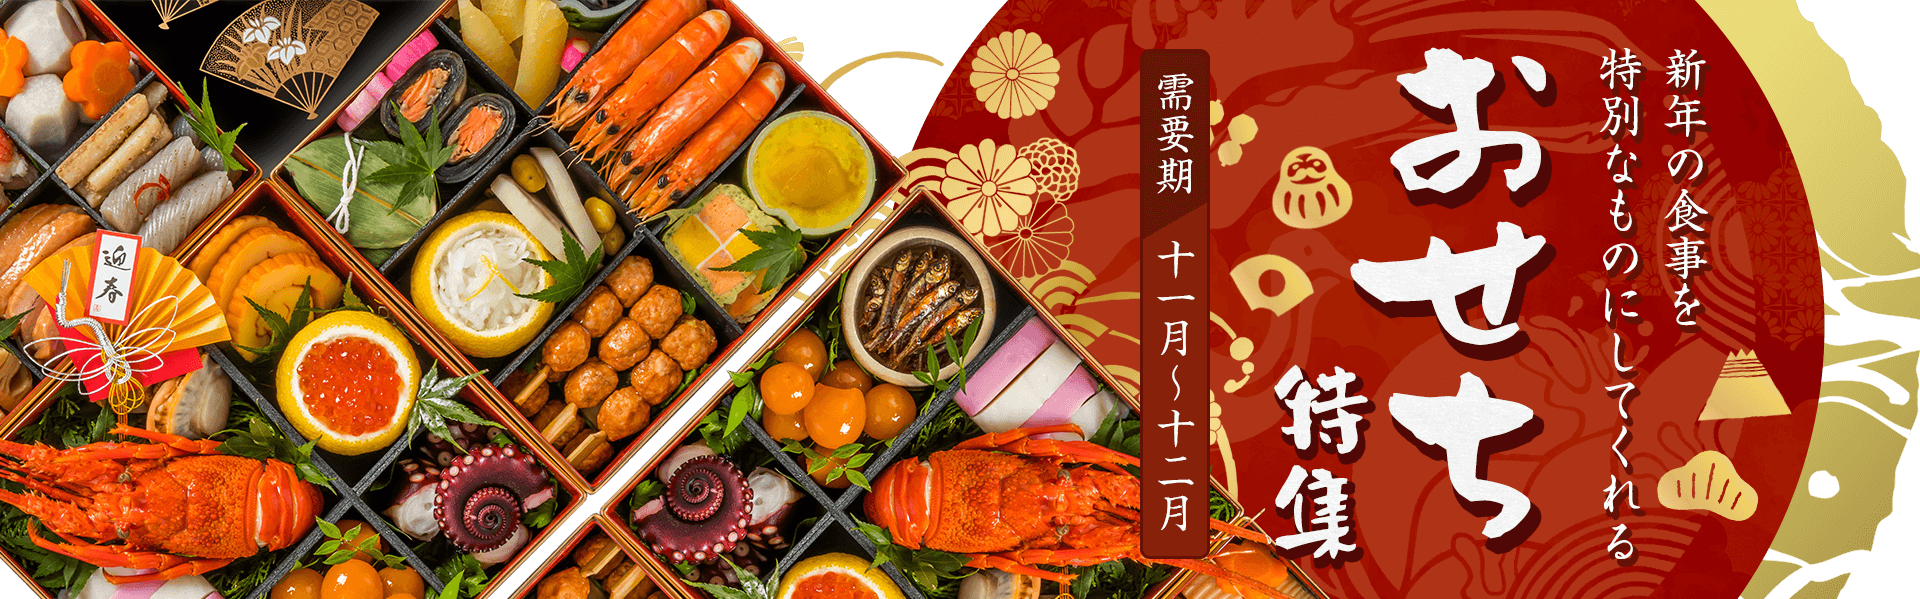 【A8.net】新年の食事を特別なものにしてくれる【おせち特集】